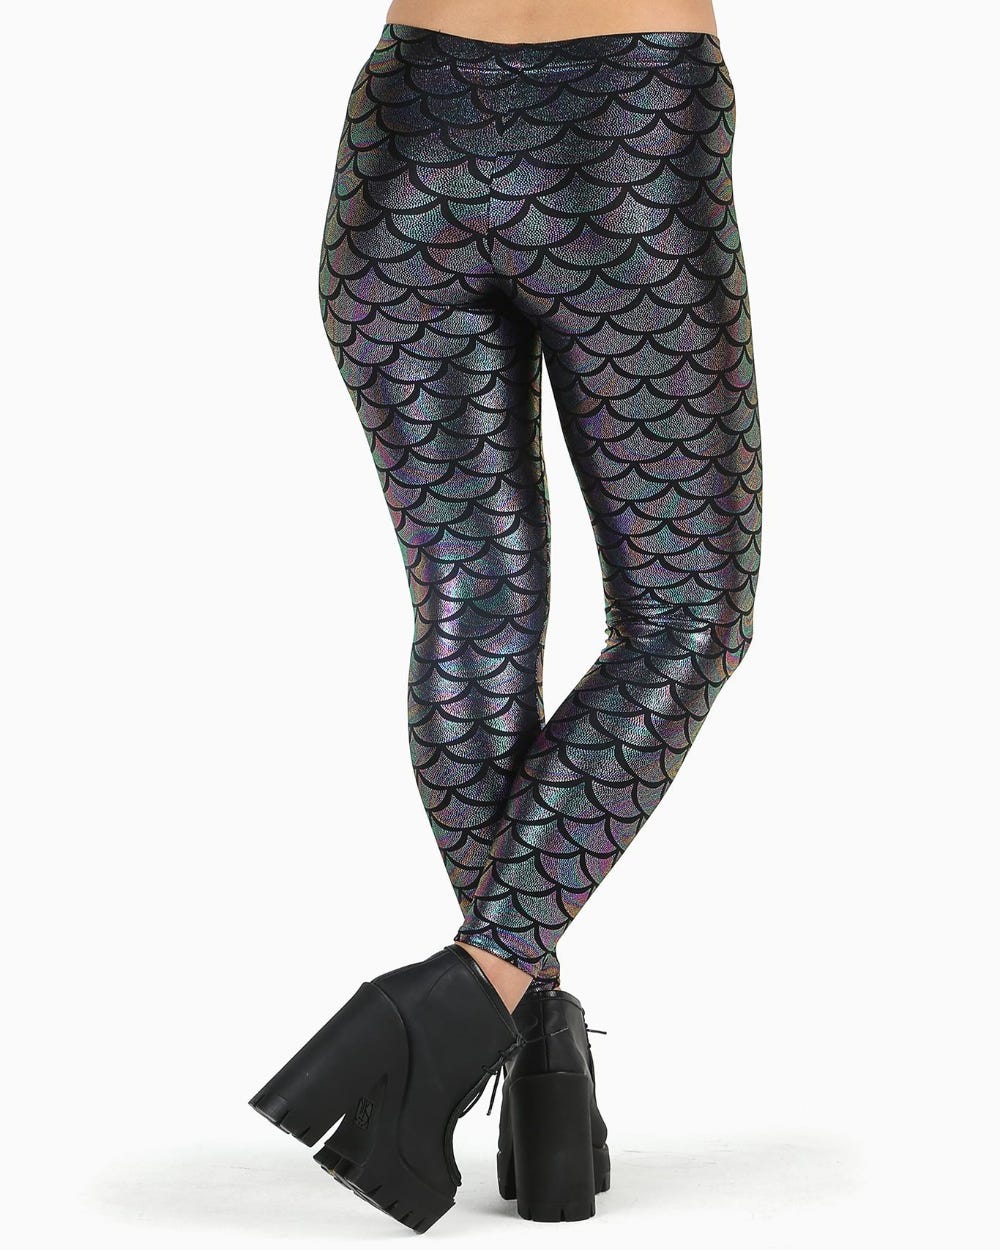 Mermaid Chameleon Leggings 2.0 - Limited